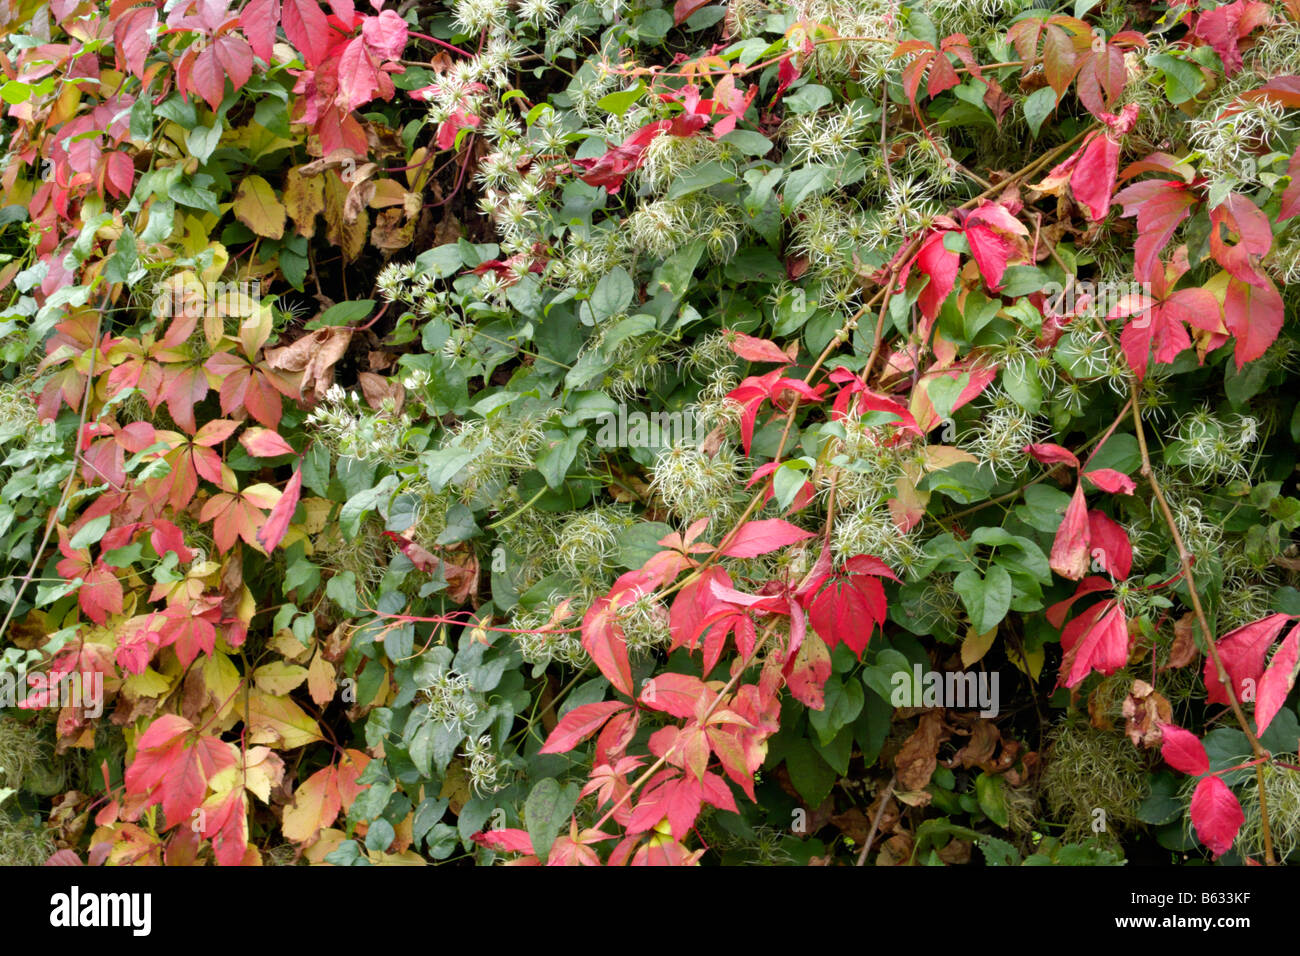 Clematis (Clematis) and Virginia creeper (Parthenocissus quinquefolia) Stock Photo